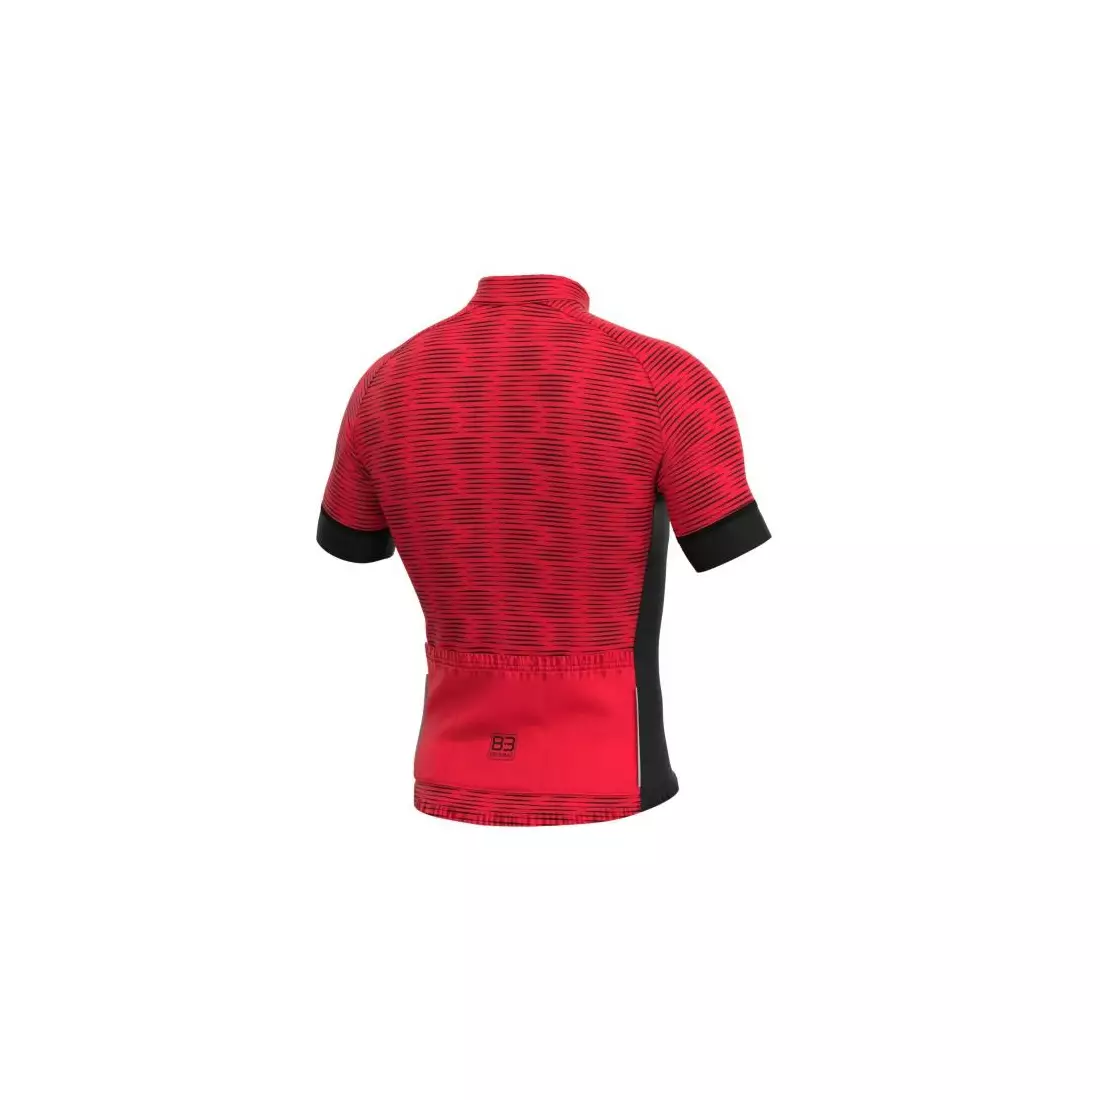 Biemme tricou de ciclism masculin CIPRESS roșu-negru